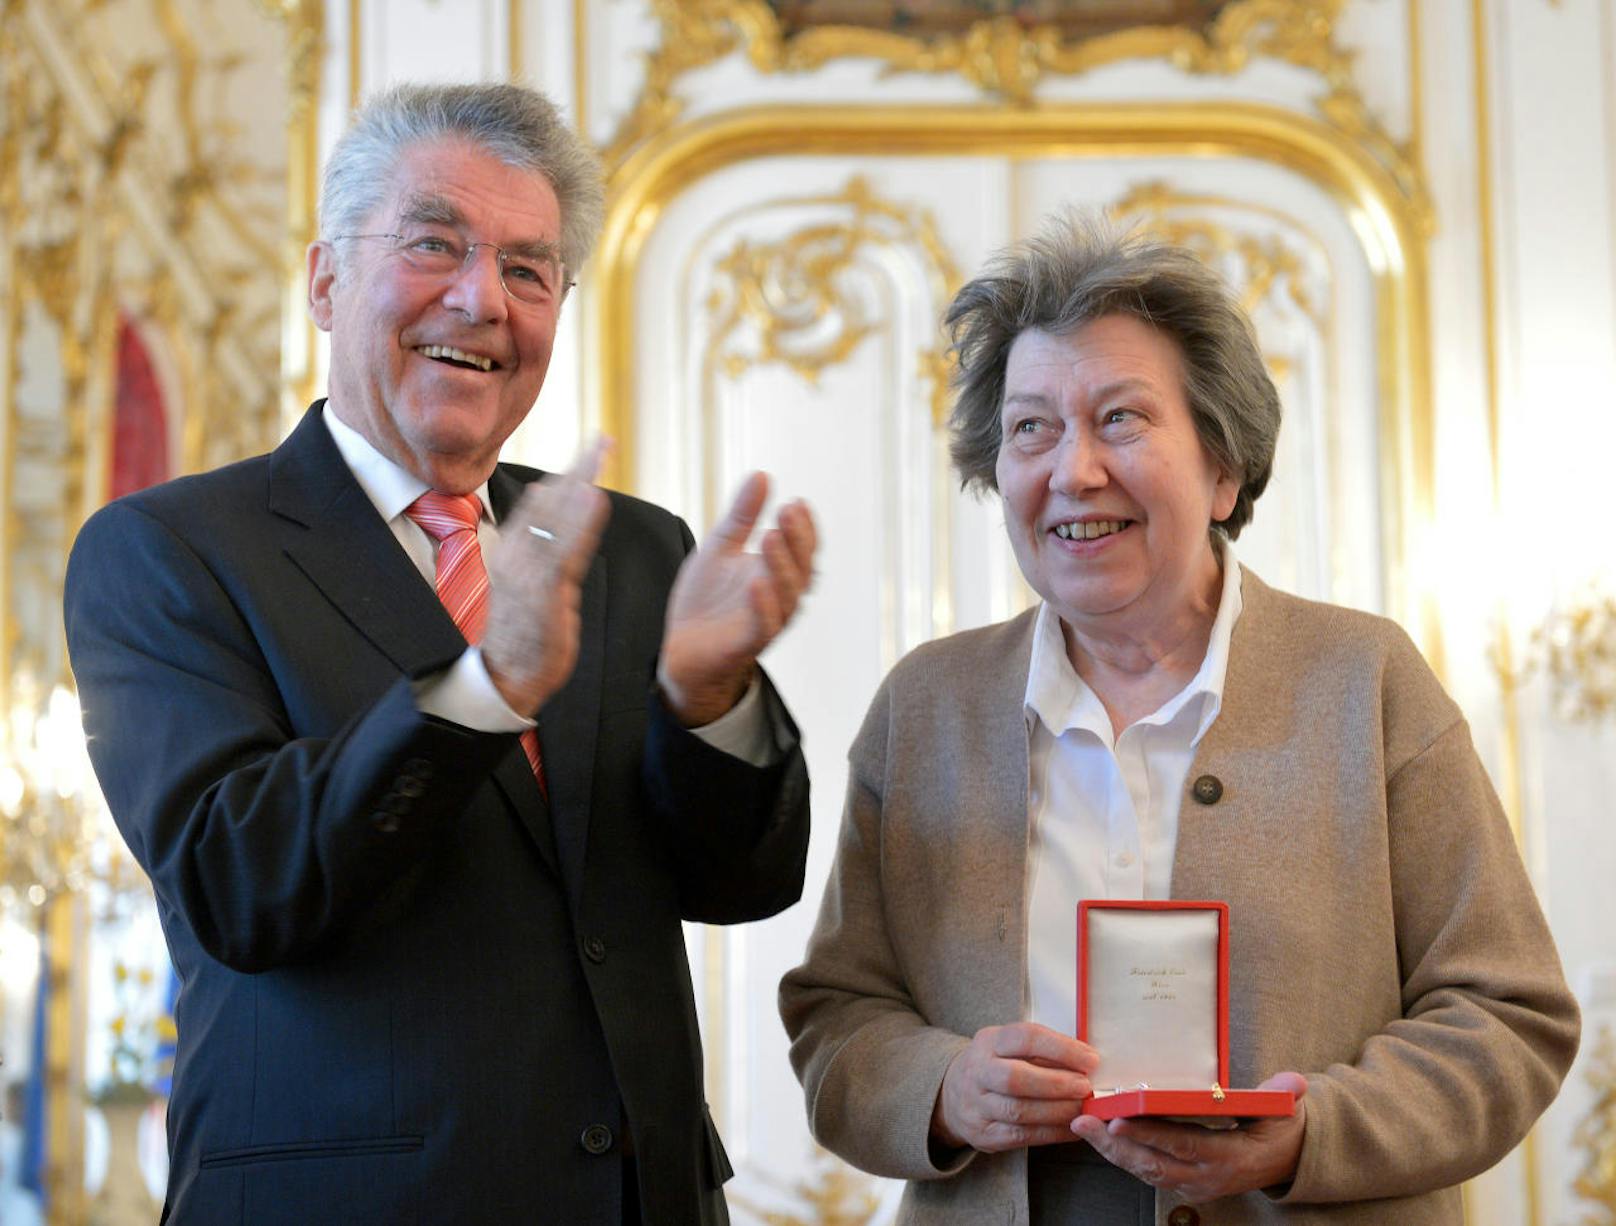 2012 verlieh der damalige Bundespräsident Heinz Fischer das Goldene Verdienstzeichen an Ute Bock, nun wird eine Gasse nach ihr benannt.&nbsp;